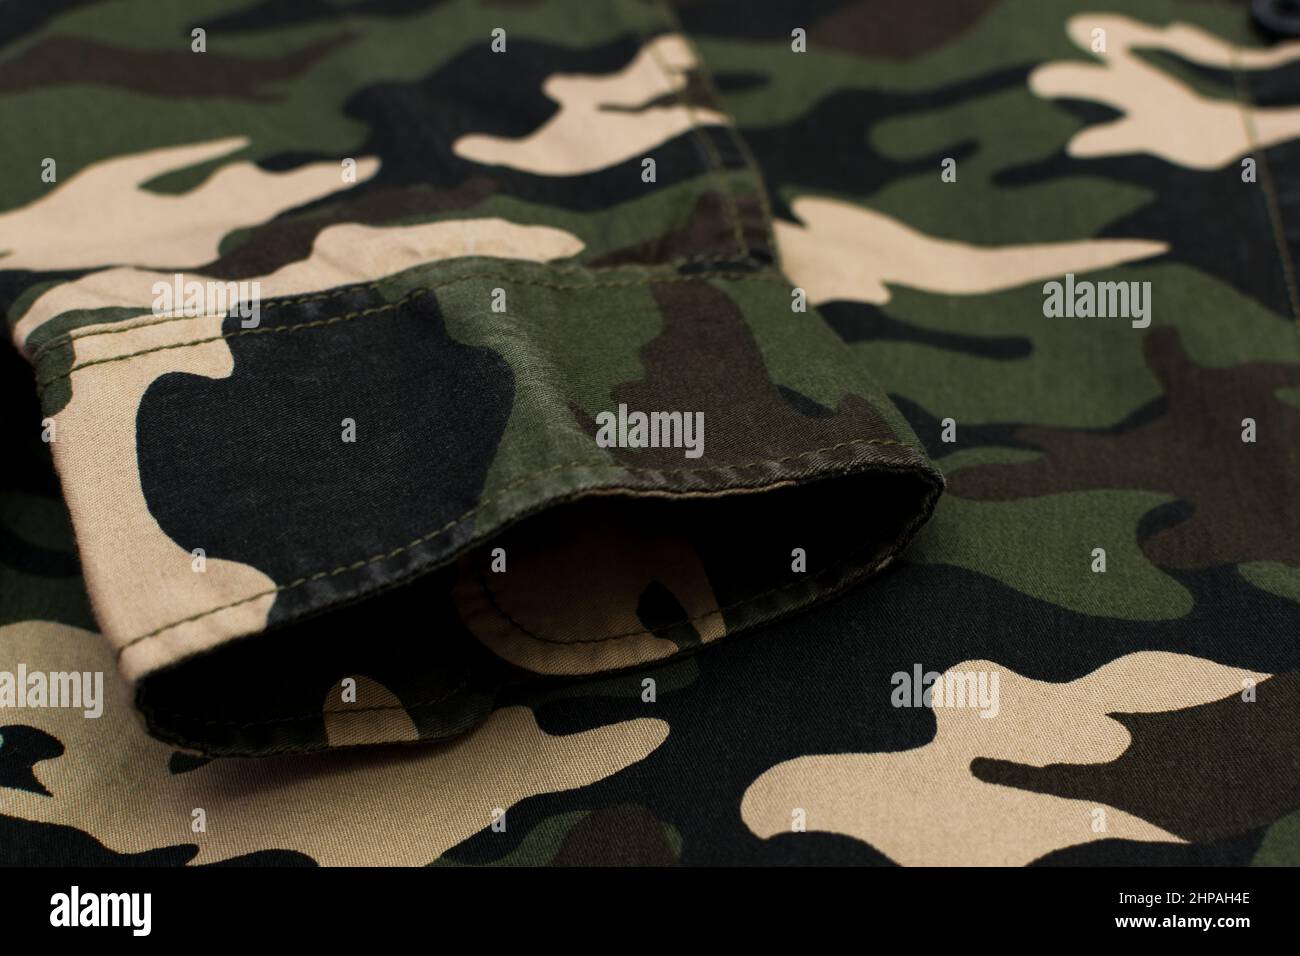 Uniforme militaire de camouflage, manches rapprochées Banque D'Images